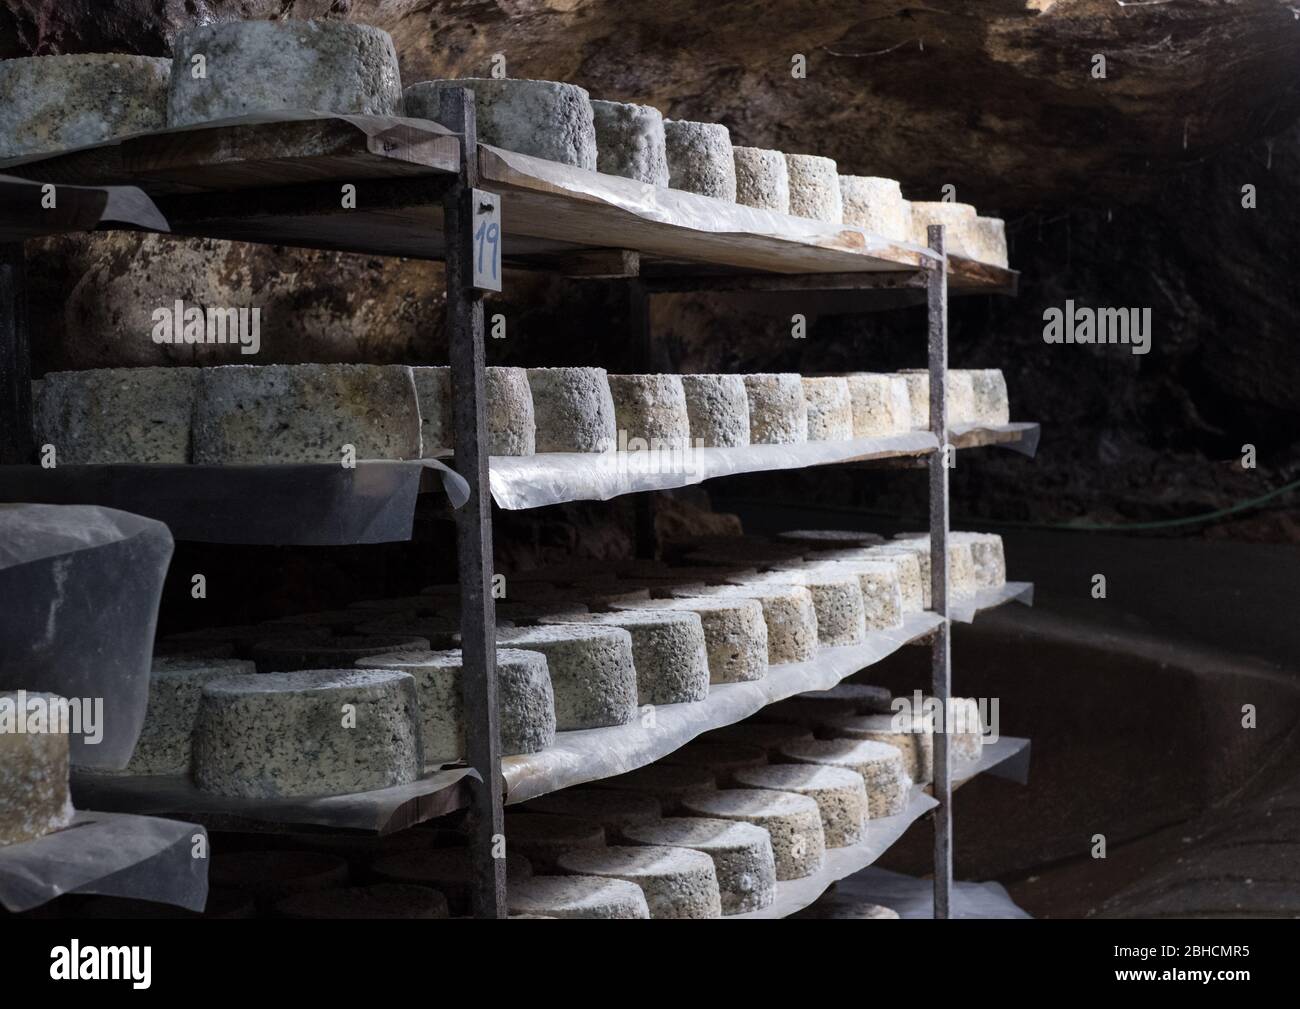 Fromages à voile bleu Cabrales arrivant à maturité dans des grottes de montagne dans les Asturies, dans le nord de l'Espagne Banque D'Images